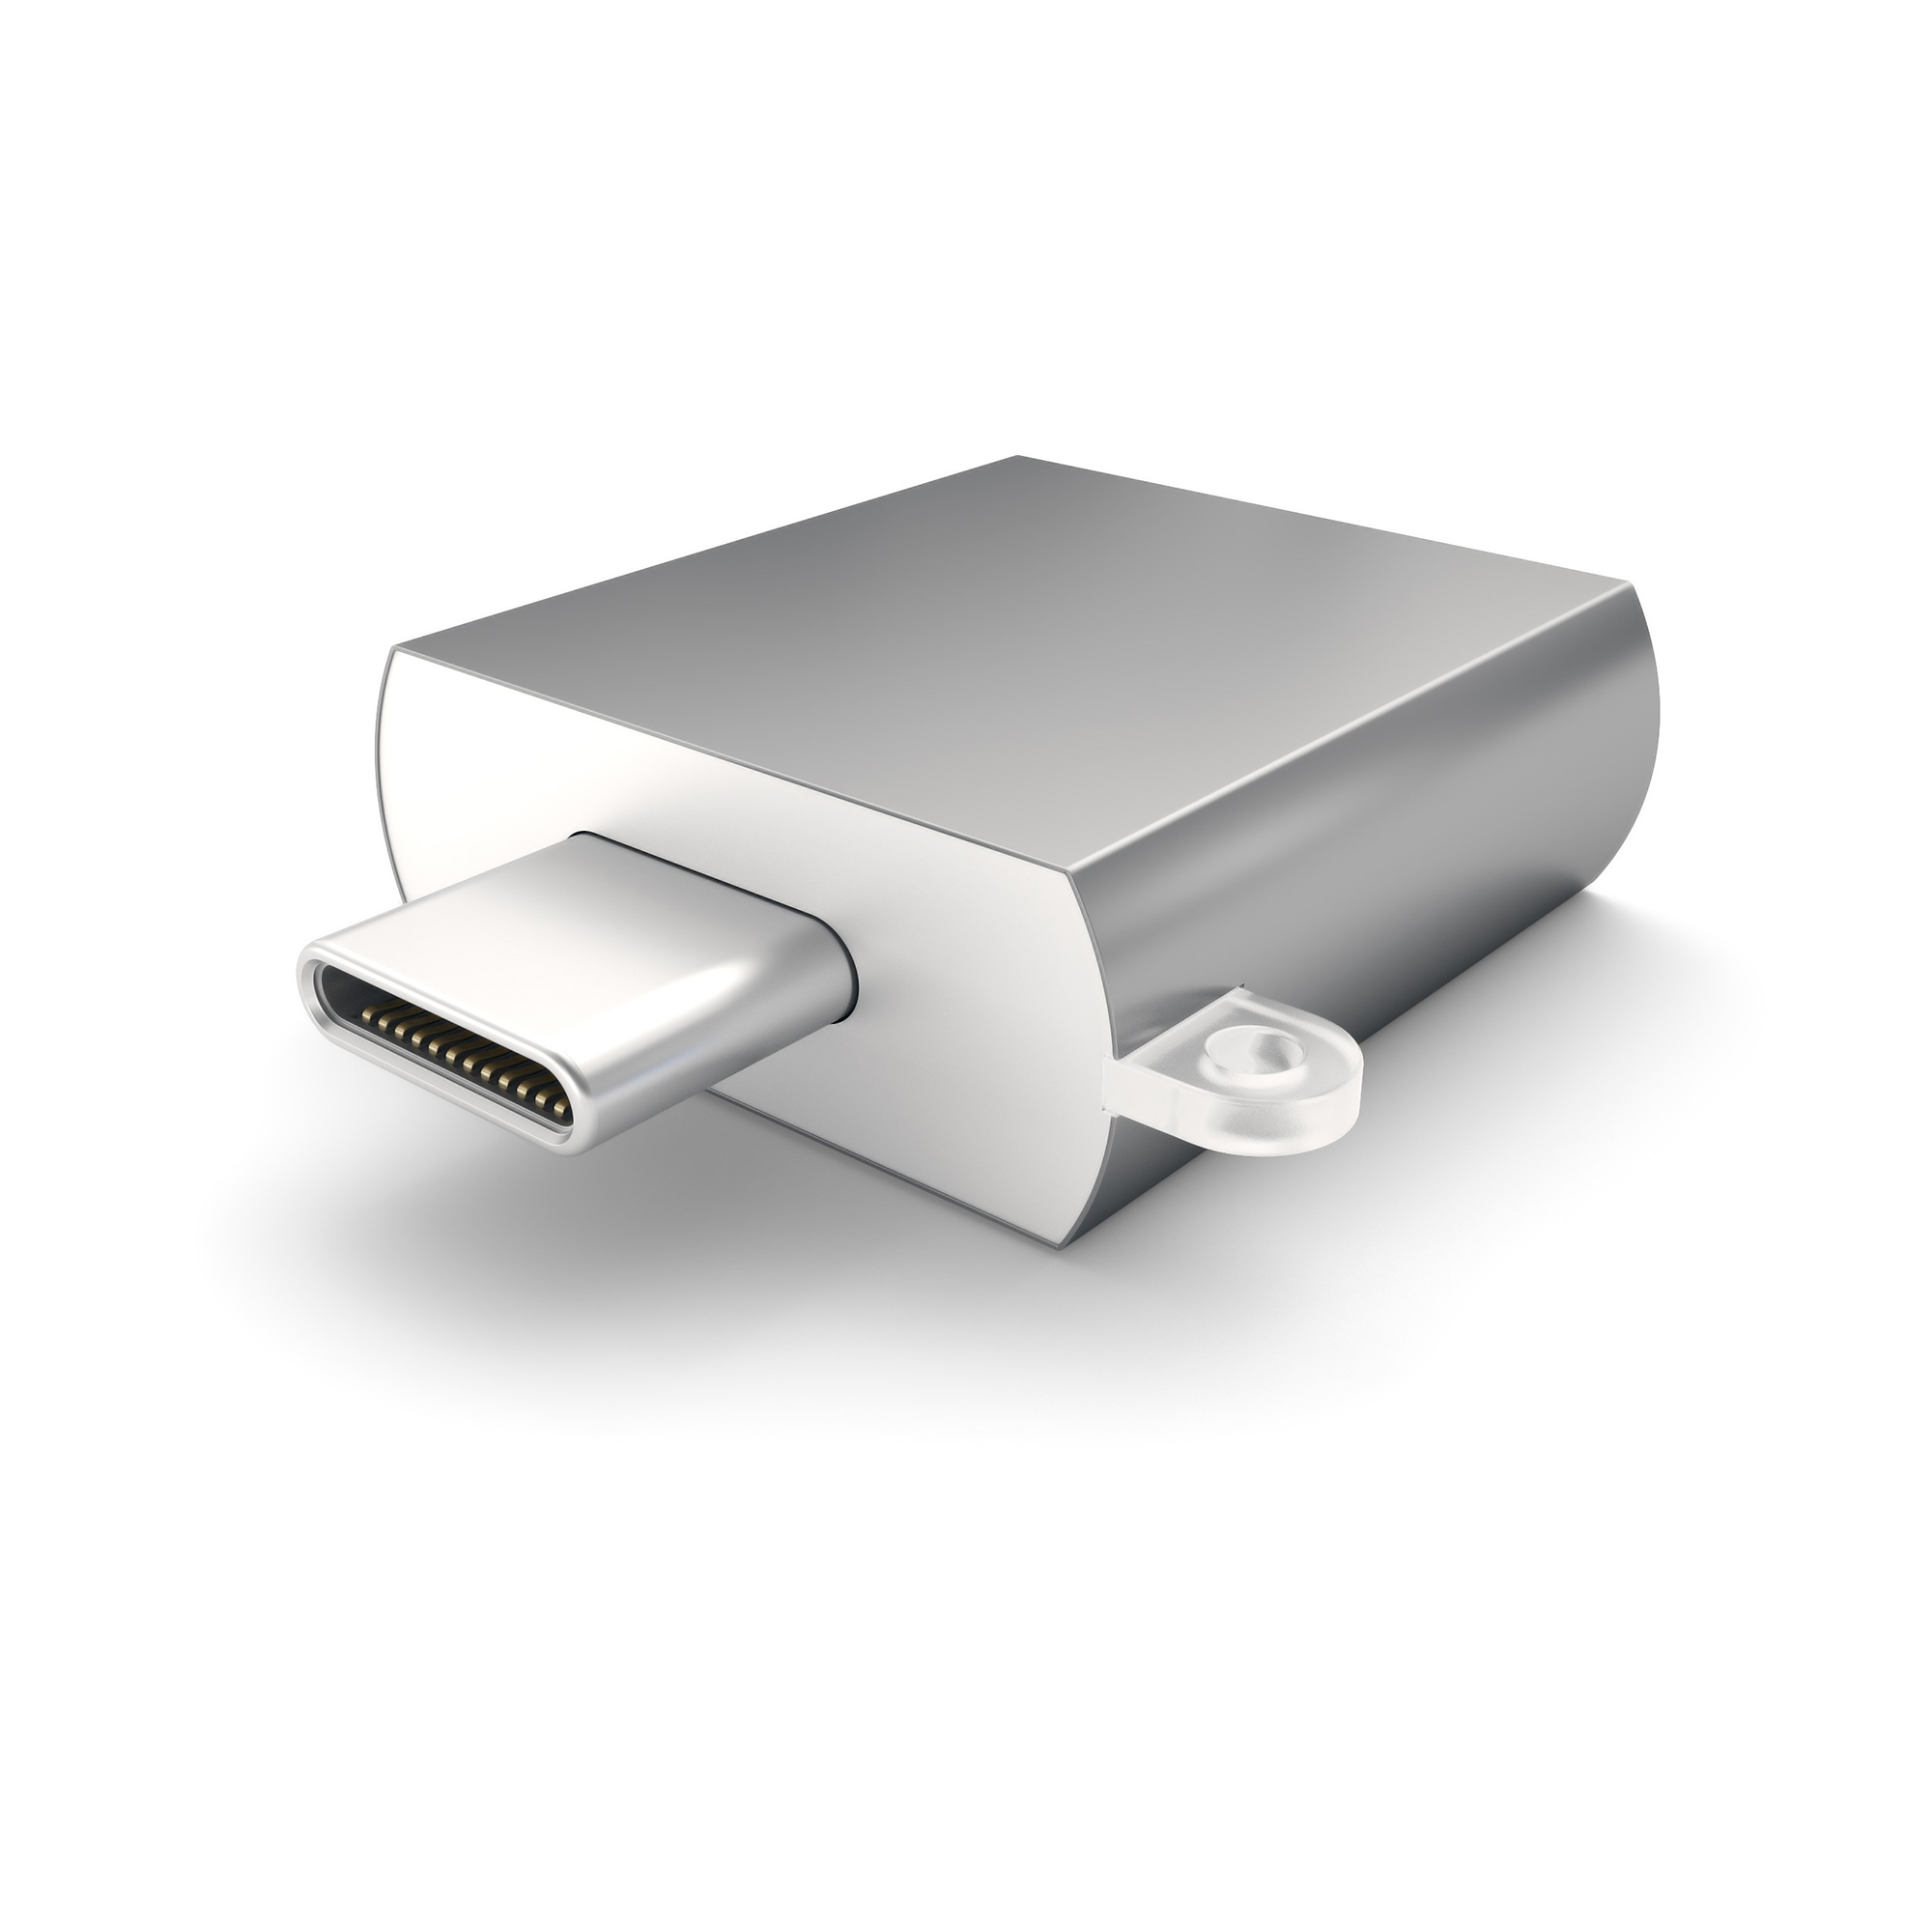 Адаптер Satechi USB 3.0 Type-C to USB 3.0 Type-A Space Gray ST-TCUAM цена и фото